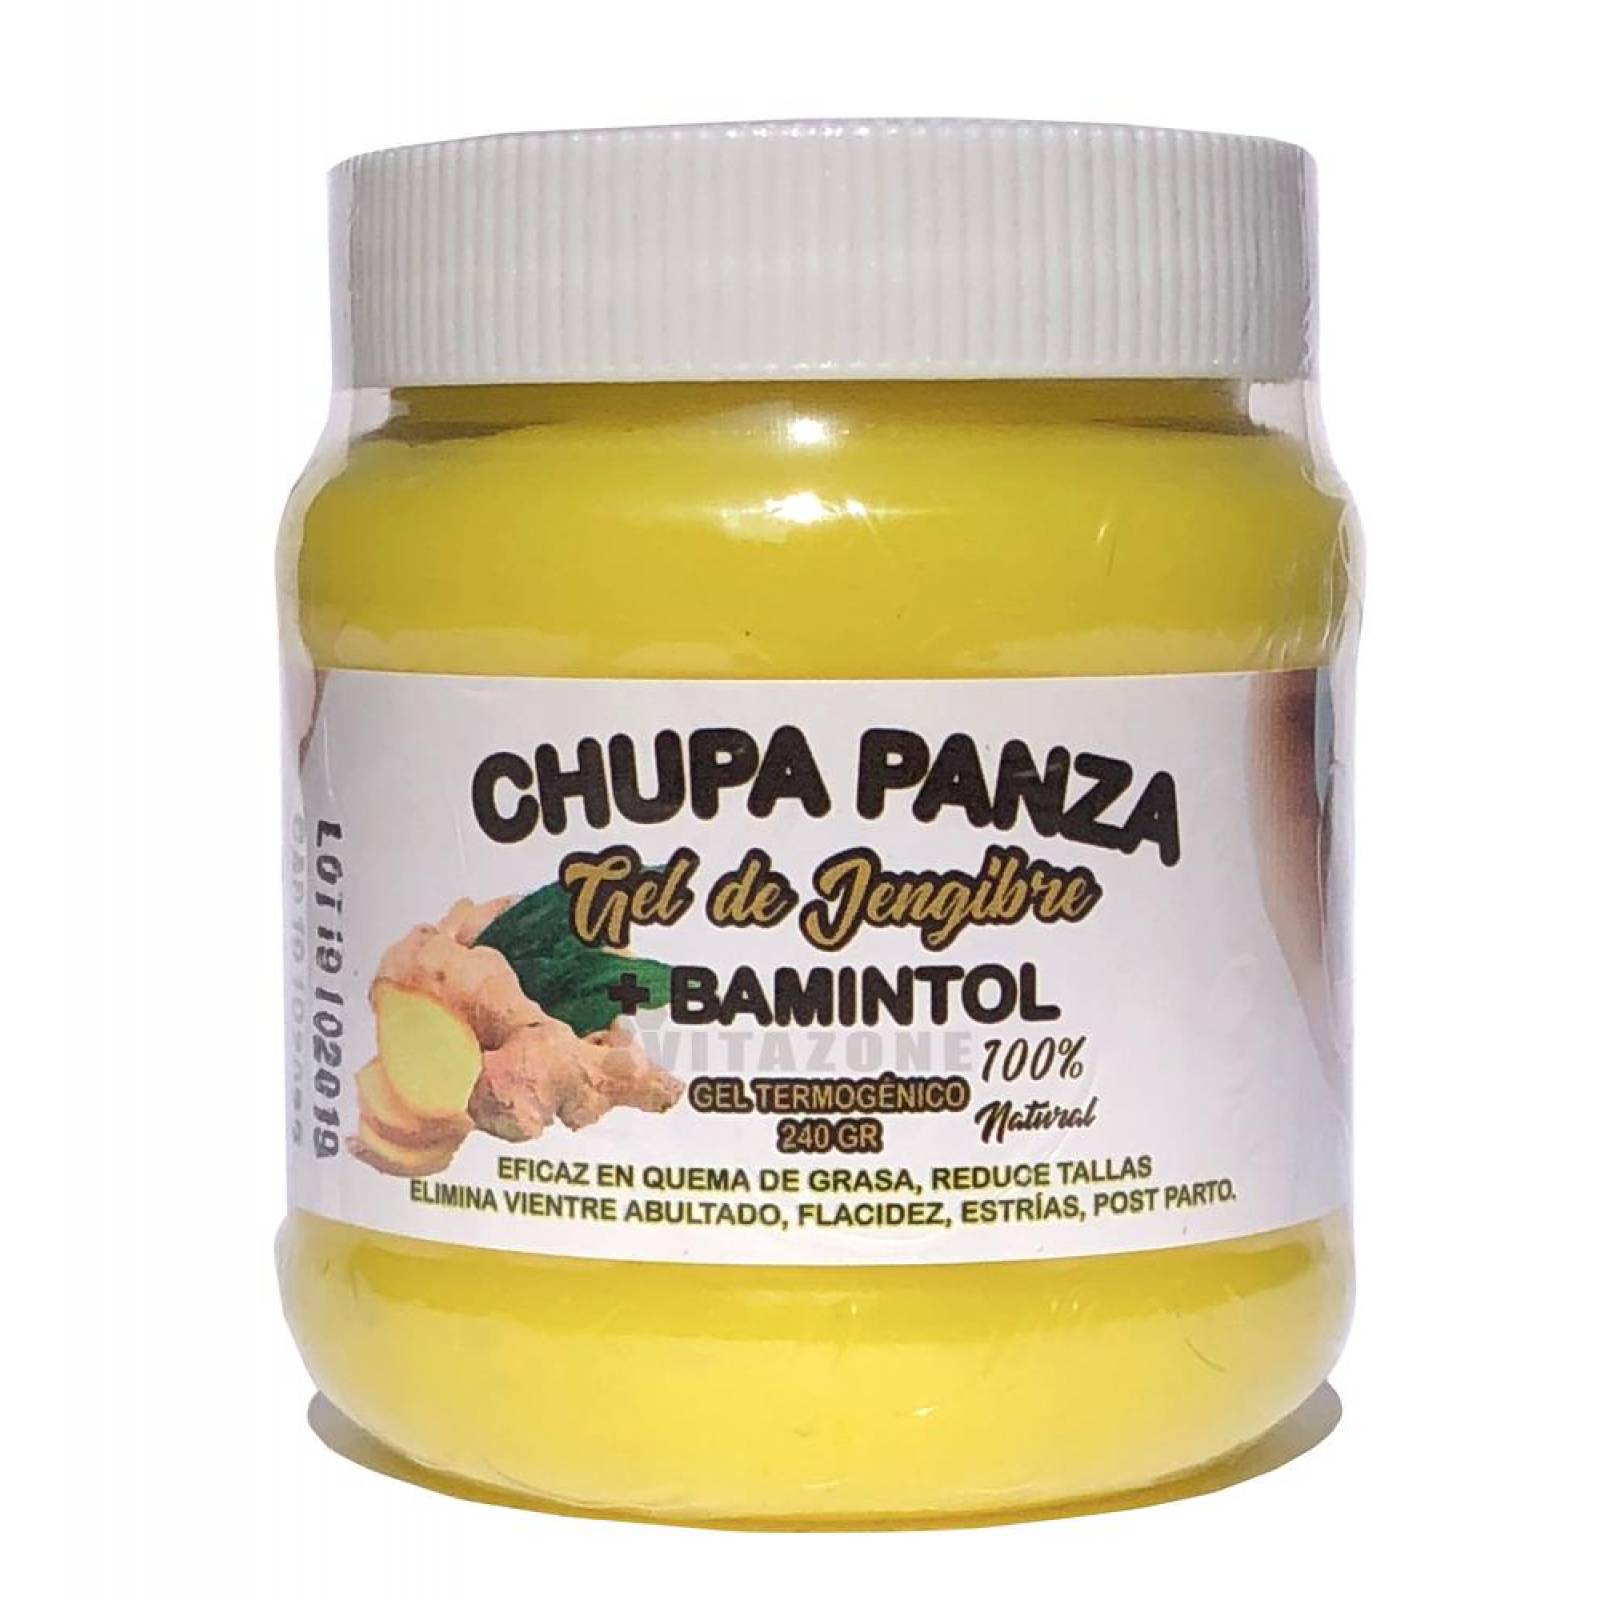 Gel Chupa Panza 12 pzs Original de Jengibre y Bamintol 240 gr 